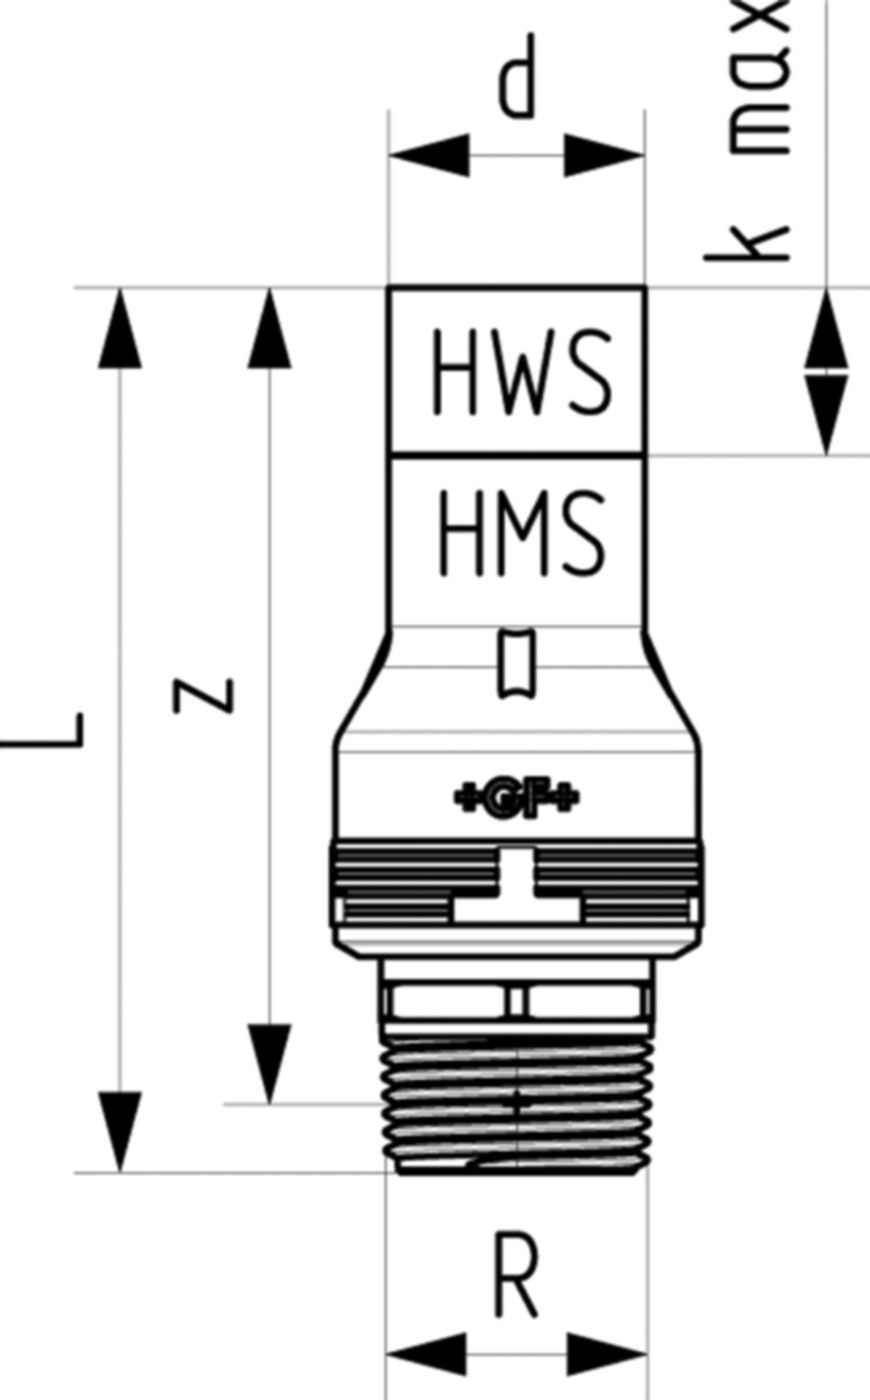 Übergang mit Aussengewinde 6214 16mm - 1/2" 761 069 666 (761 069 385) - GF Instaflex-HWS-Schweisssystem